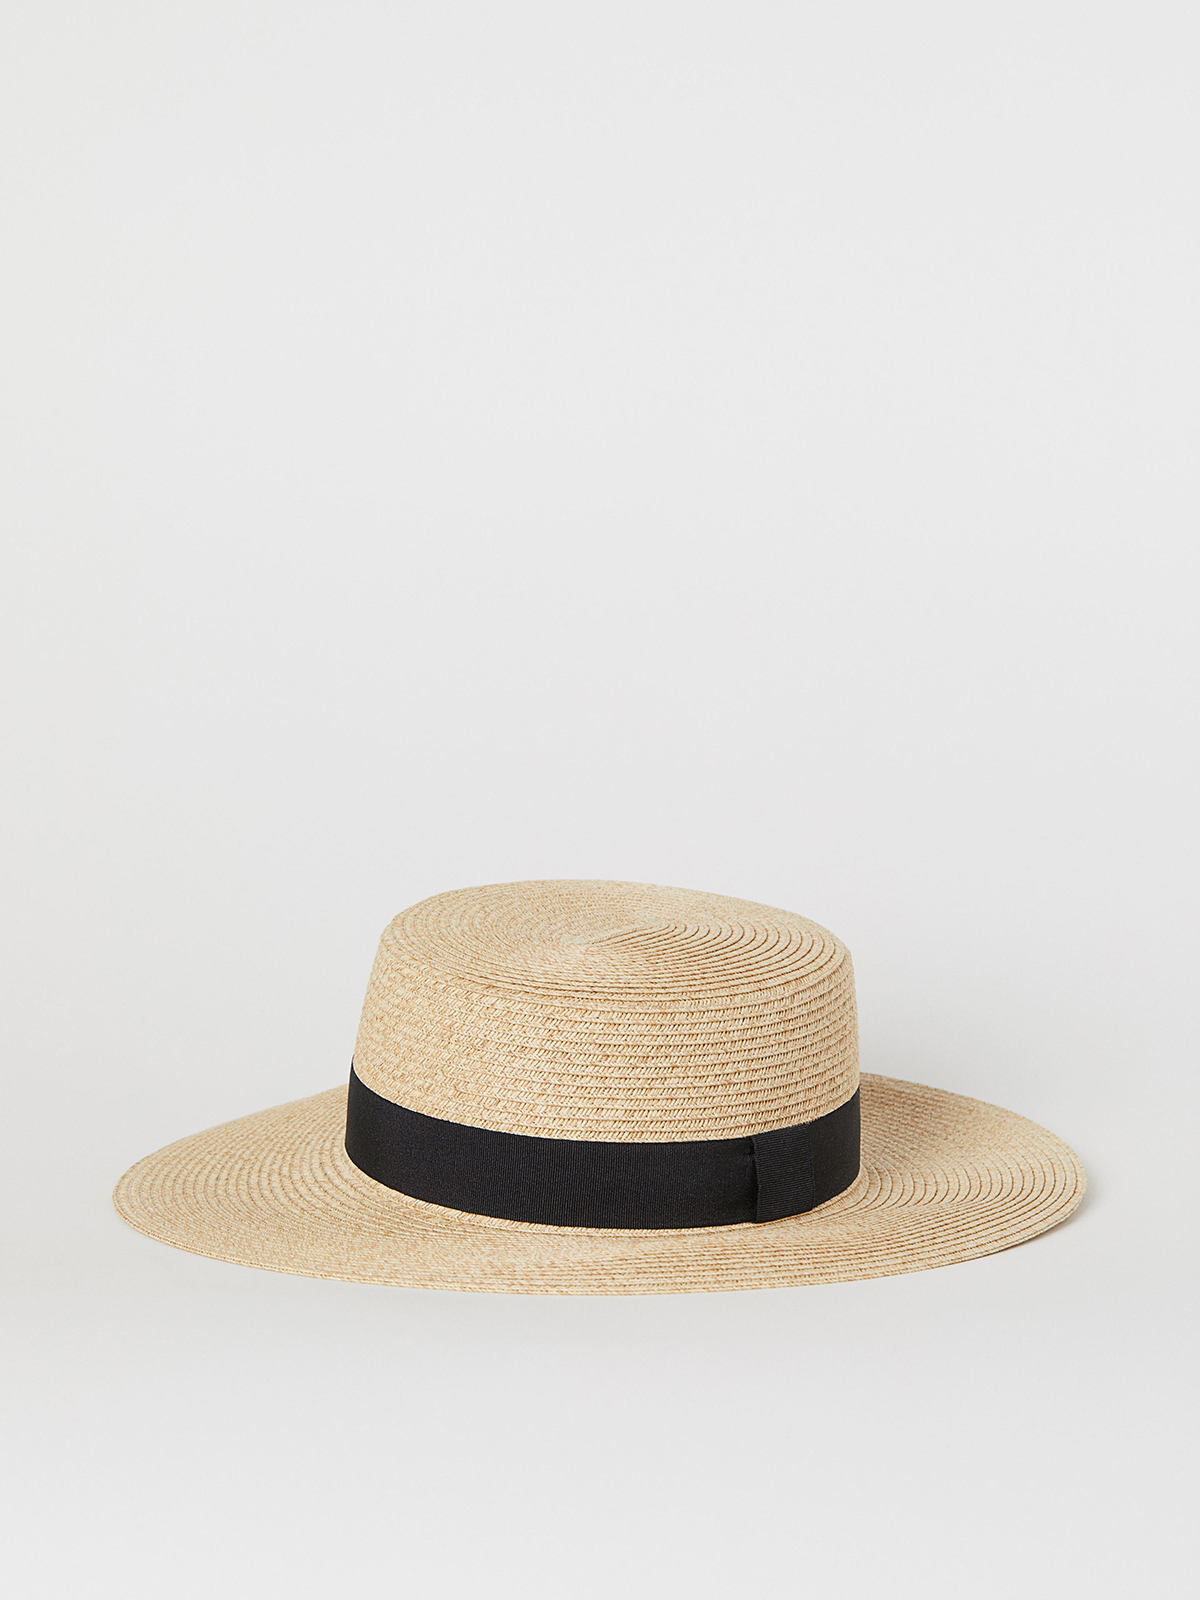 H hat. Мужская шляпа h&m divided. Соломенная шляпа h&m мужская. Соломенная шляпа h&m divided. H&M шляпа 244408.